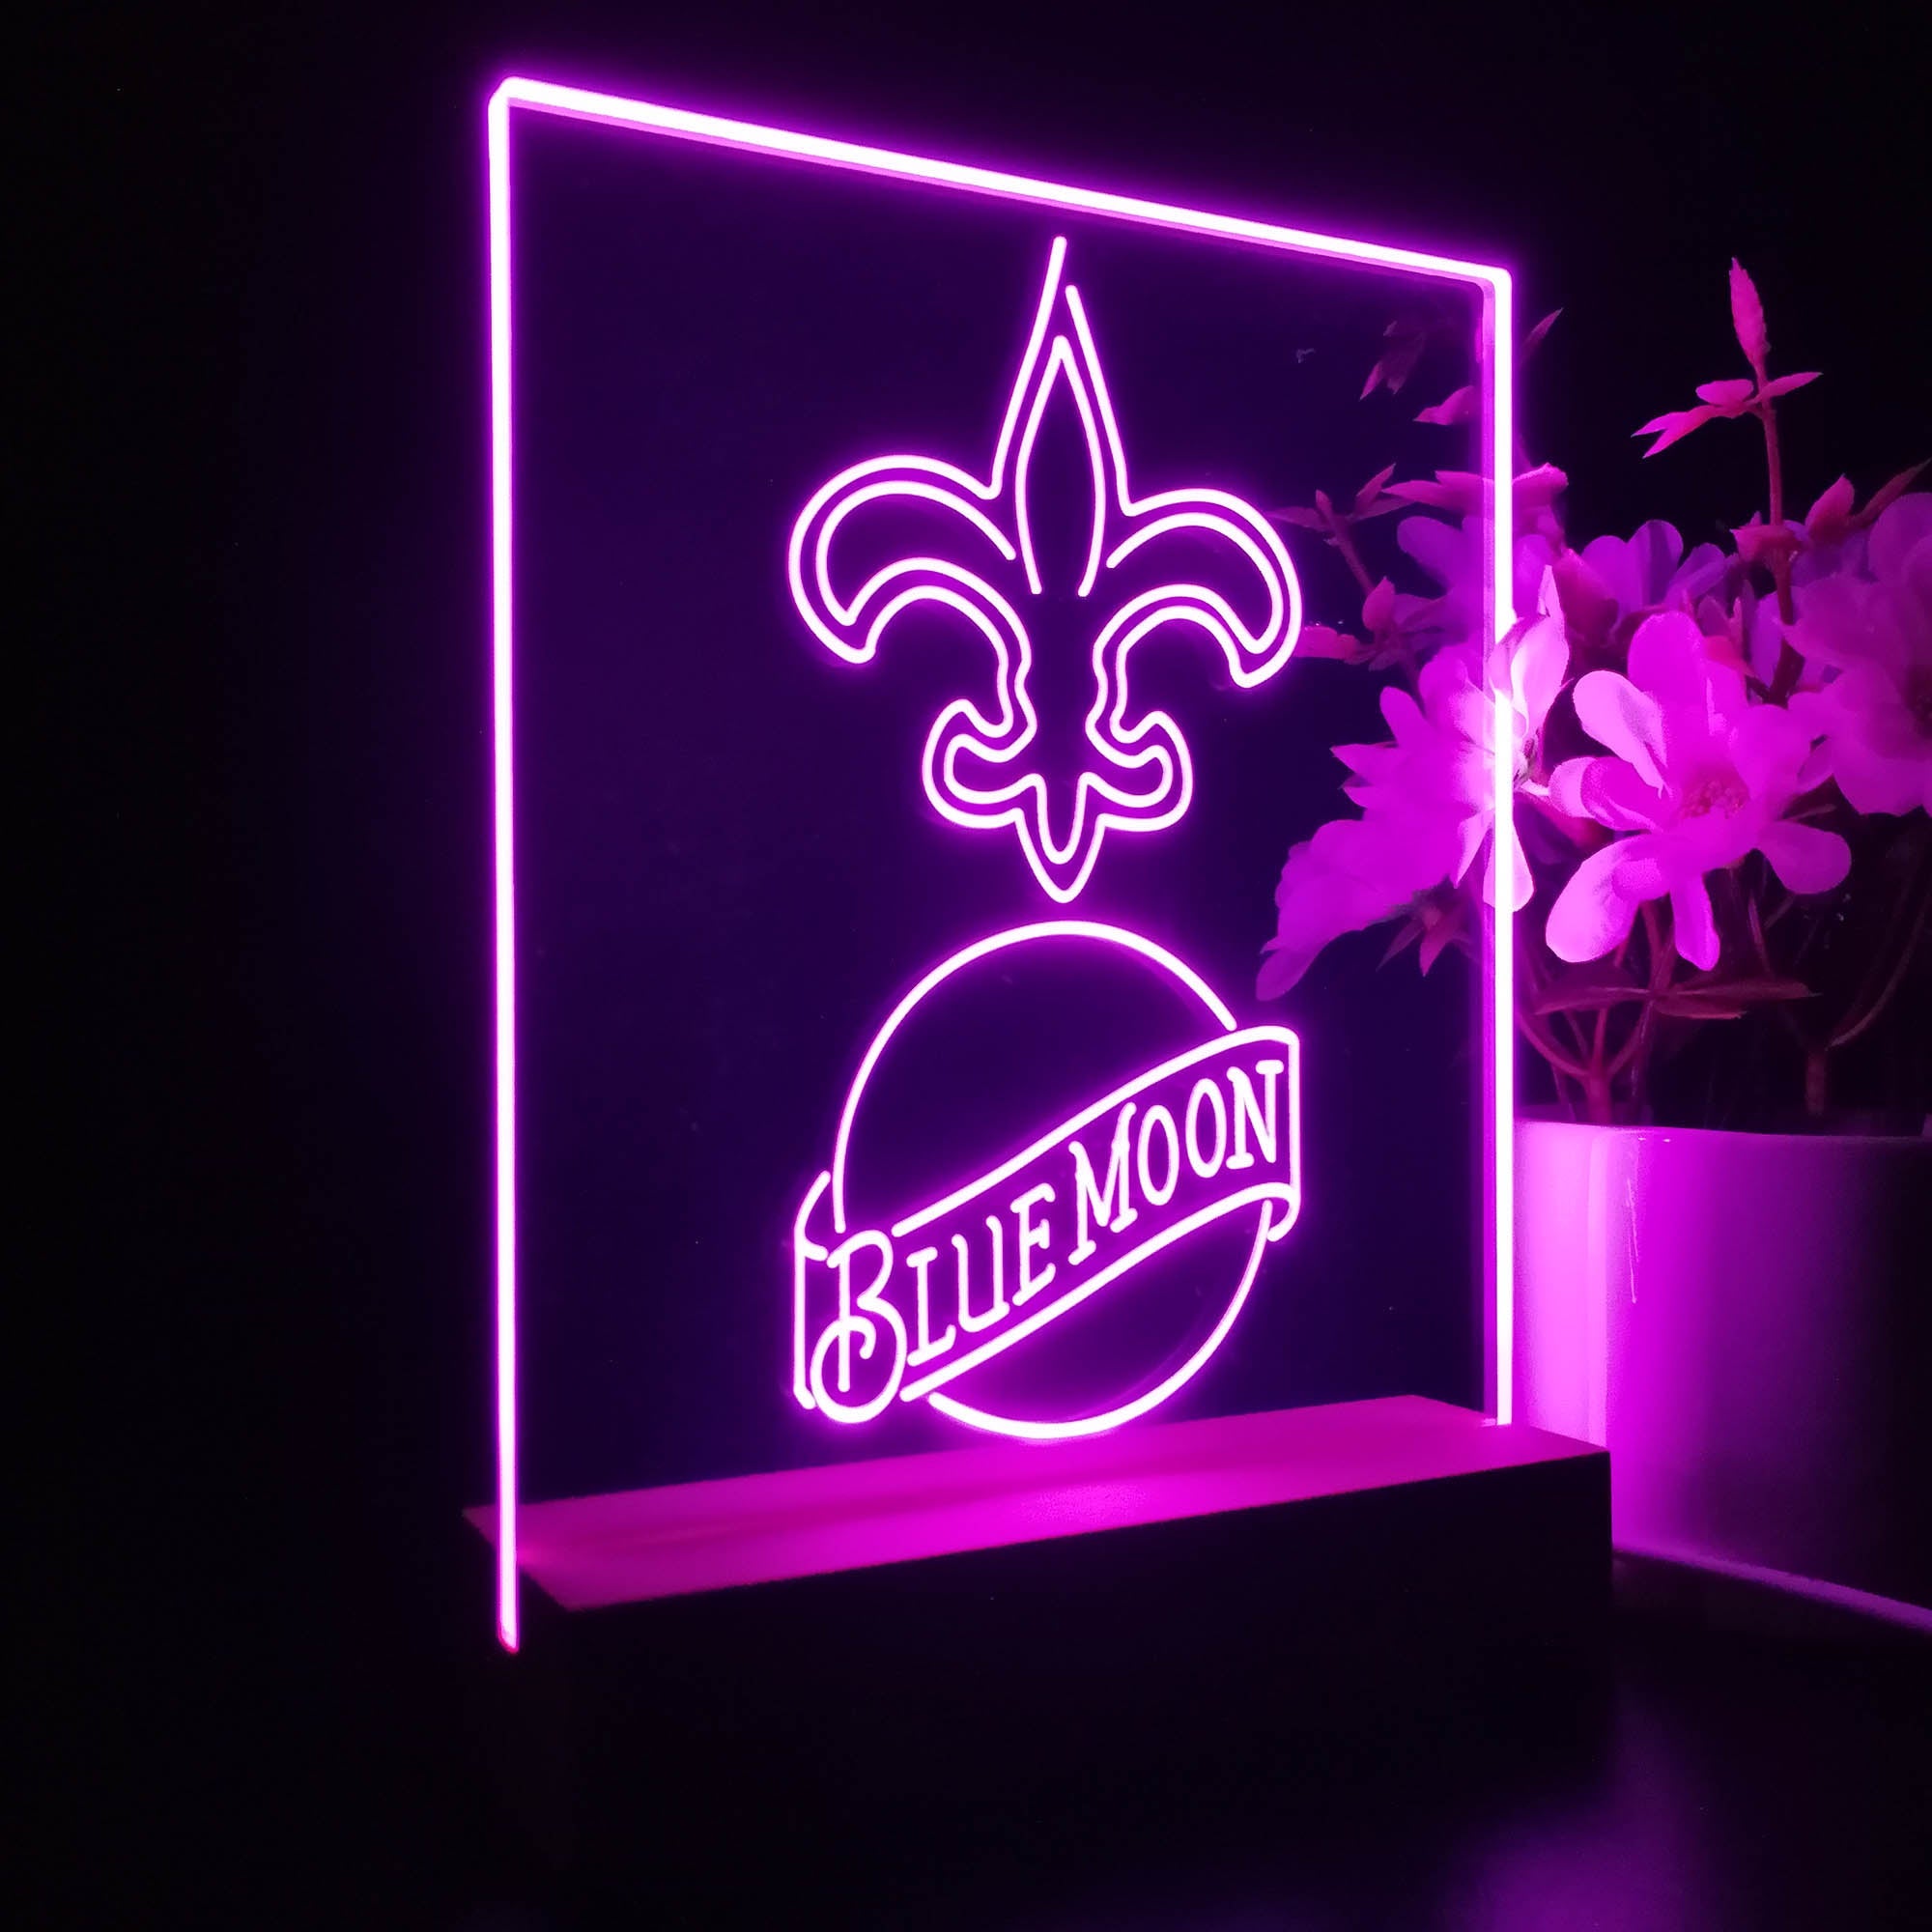 New Orleans Saints Blue Moon Neon Sign Pub Bar Lamp